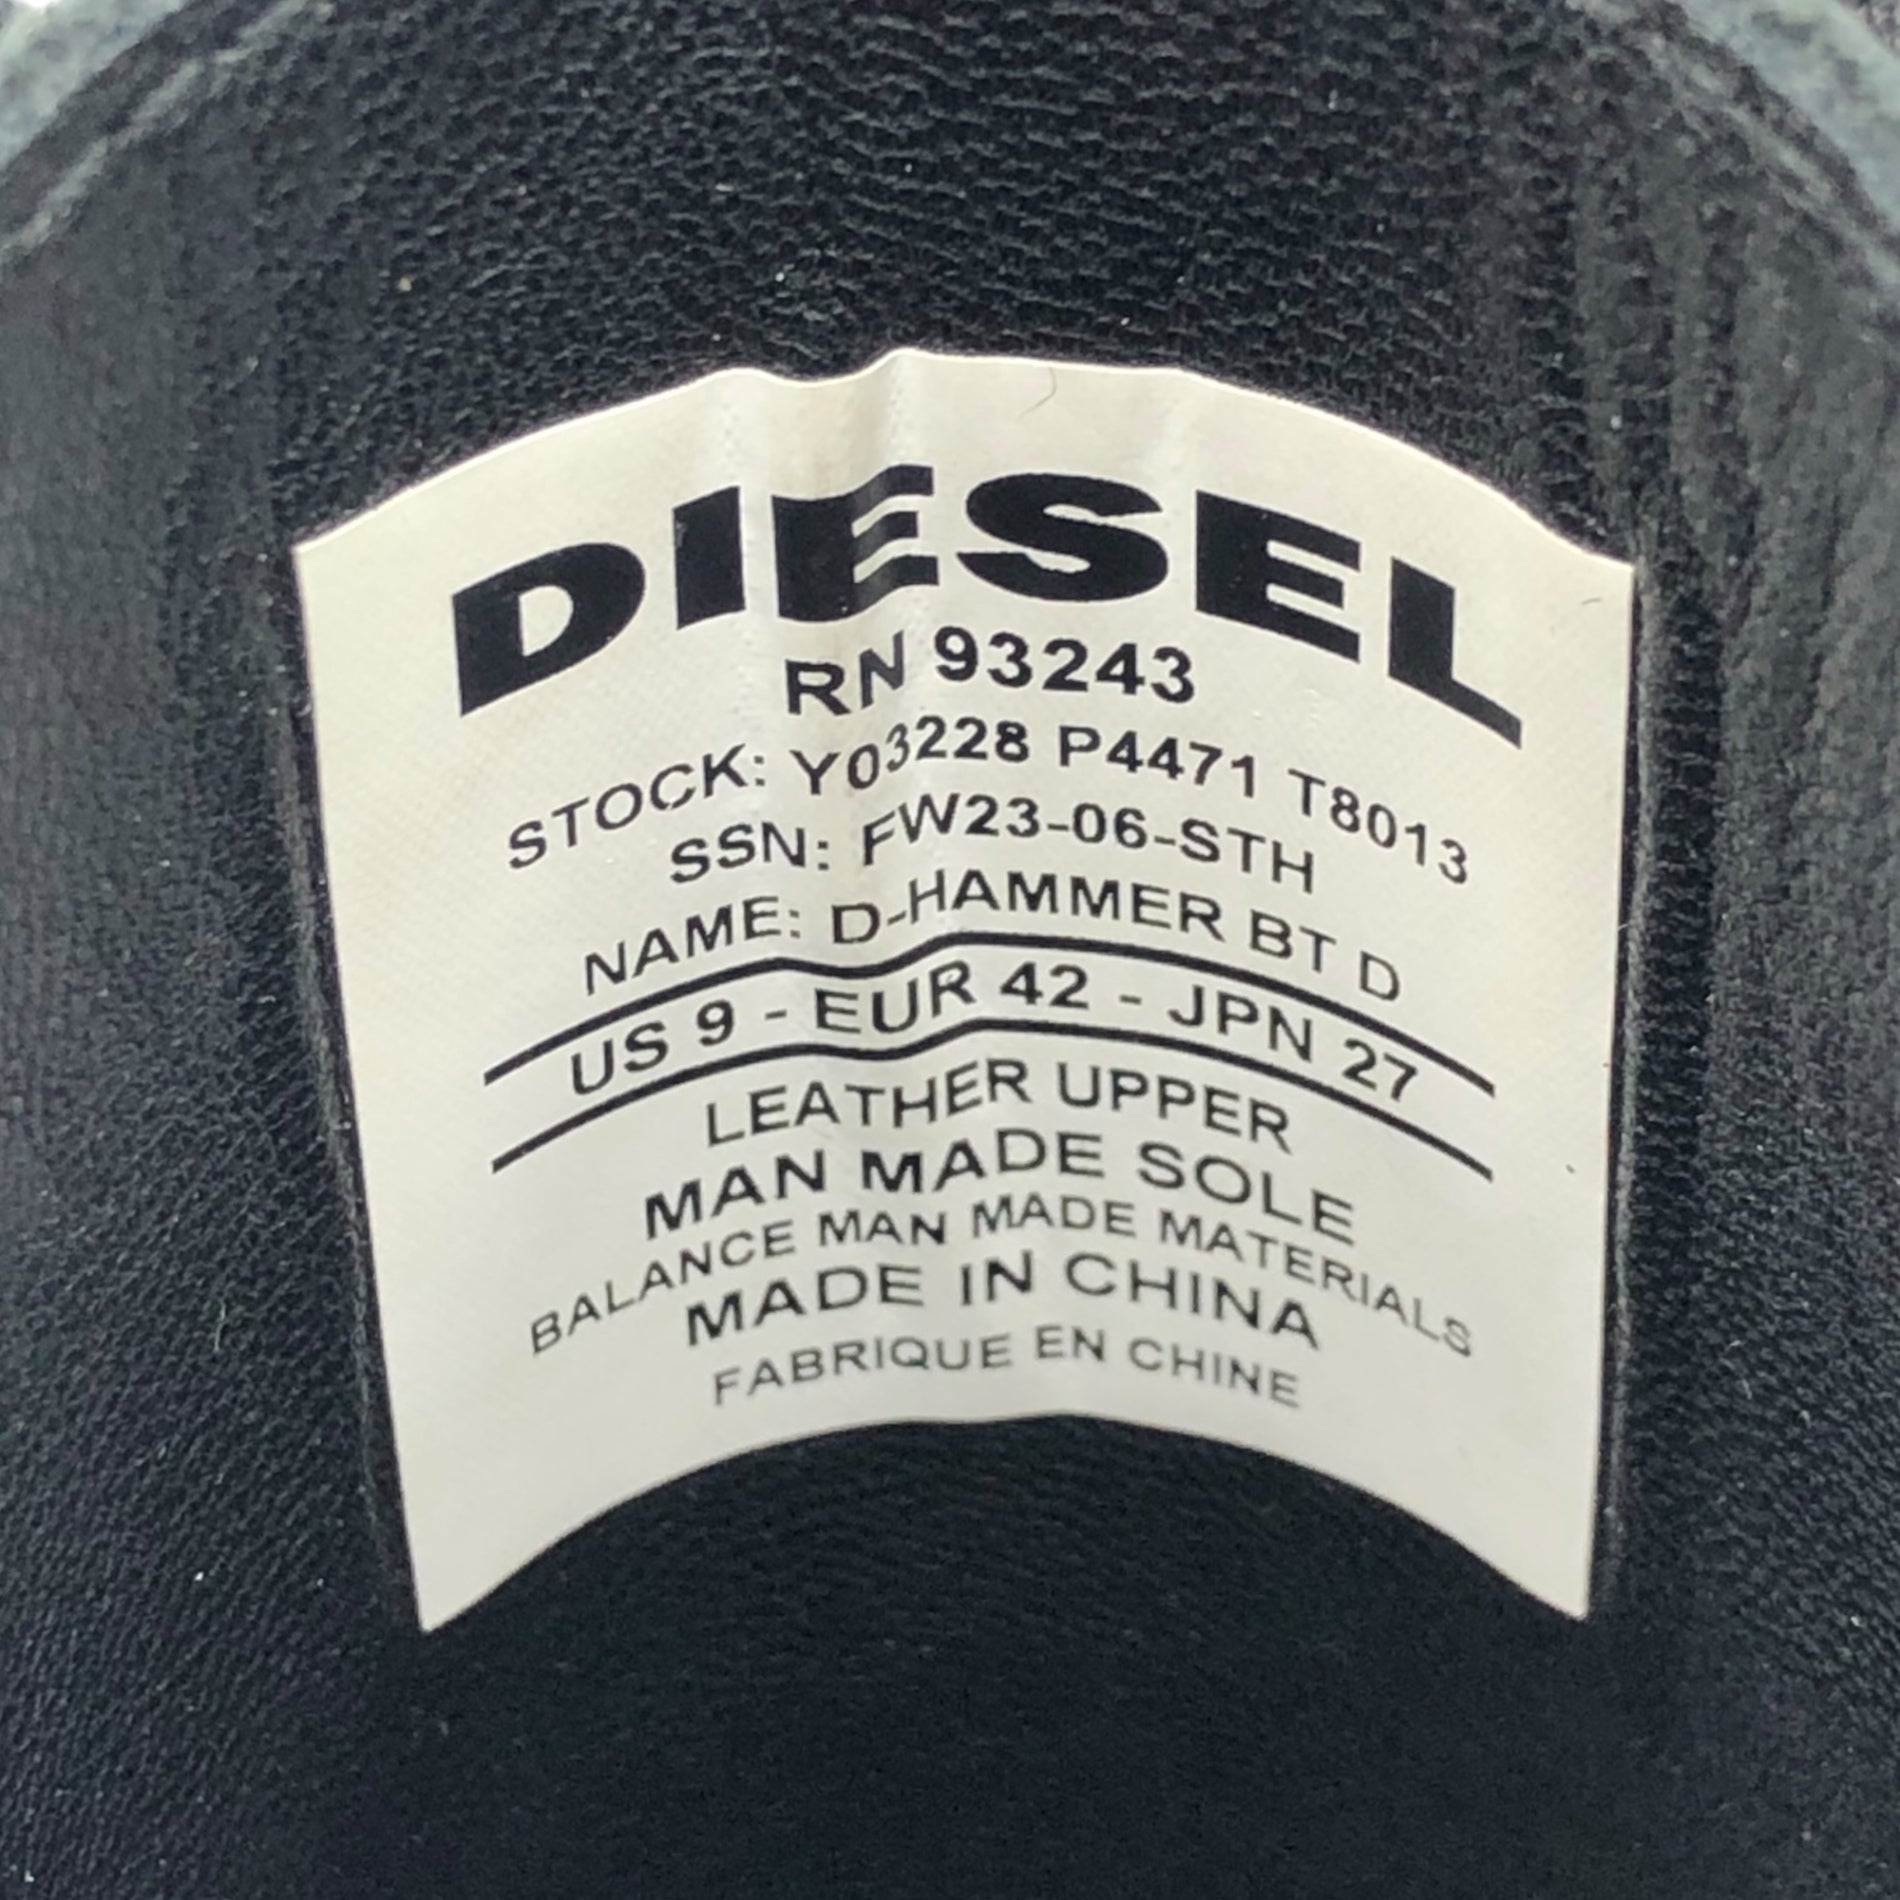 DIESEL(ディーゼル) D-Hammer Bt D D ロゴ ハンマー ブーツ 27cm ブラック レザー レースアップ サイドジップ